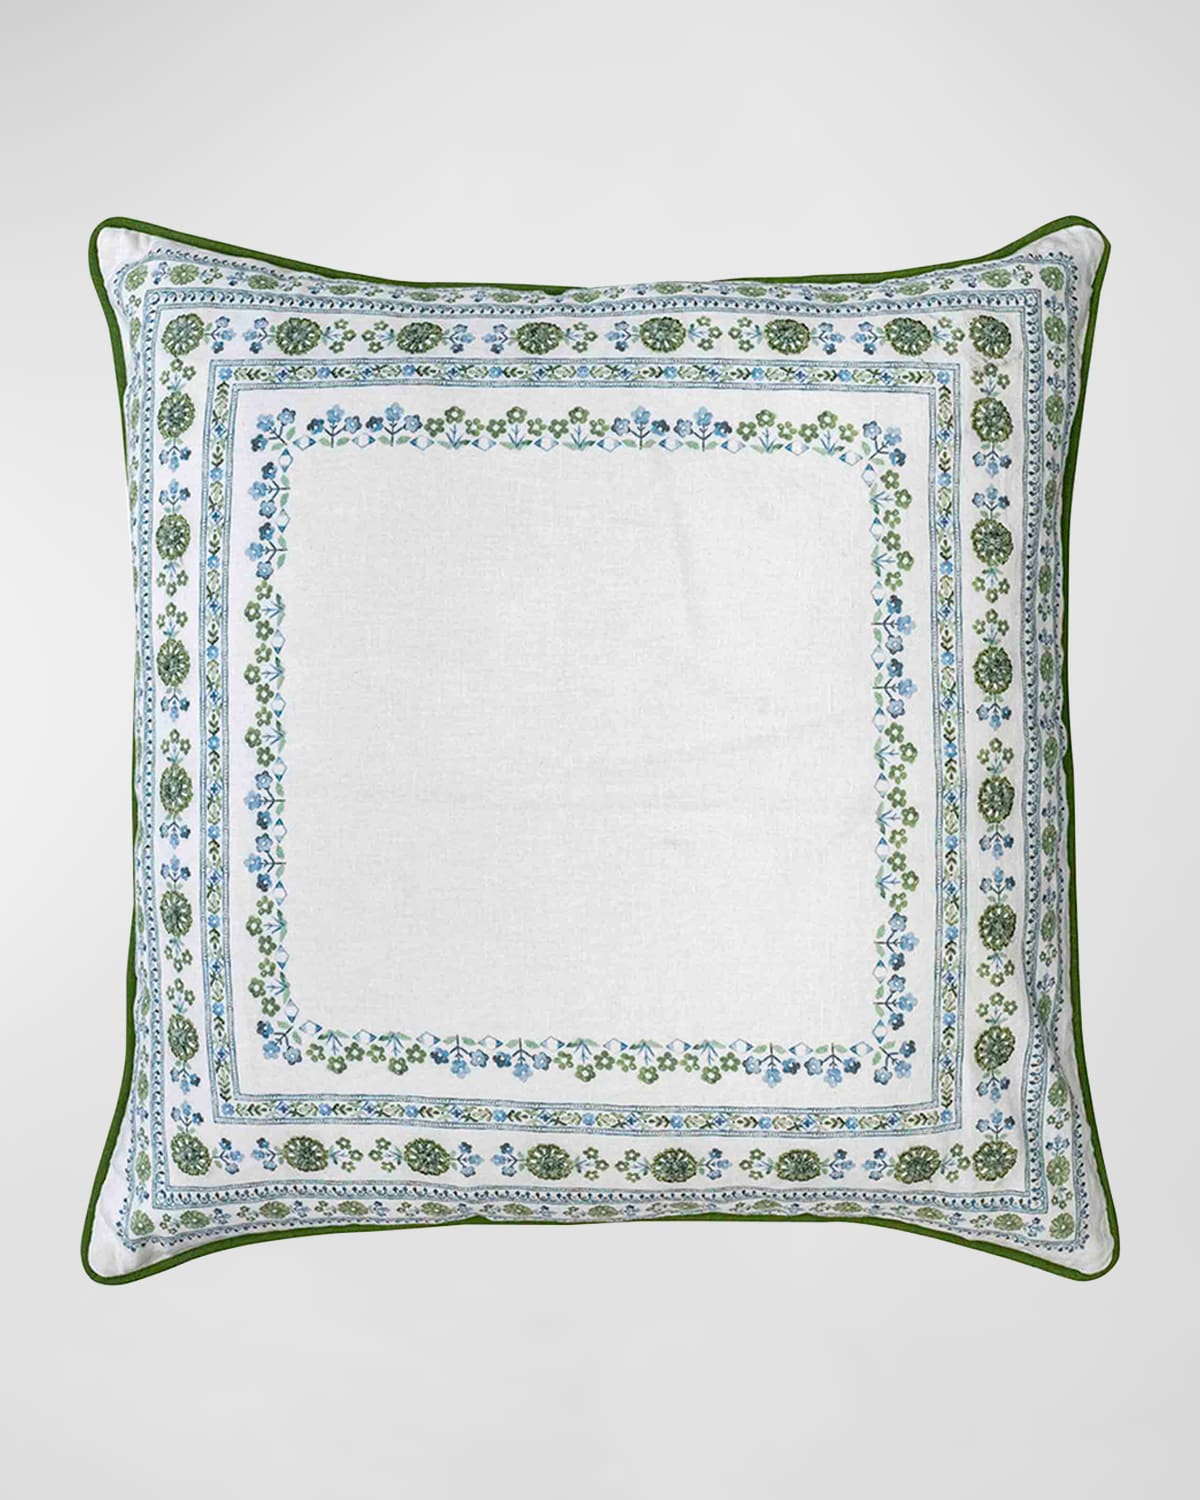 Juliska Seville Green Decorative Pillow, 22 X 22